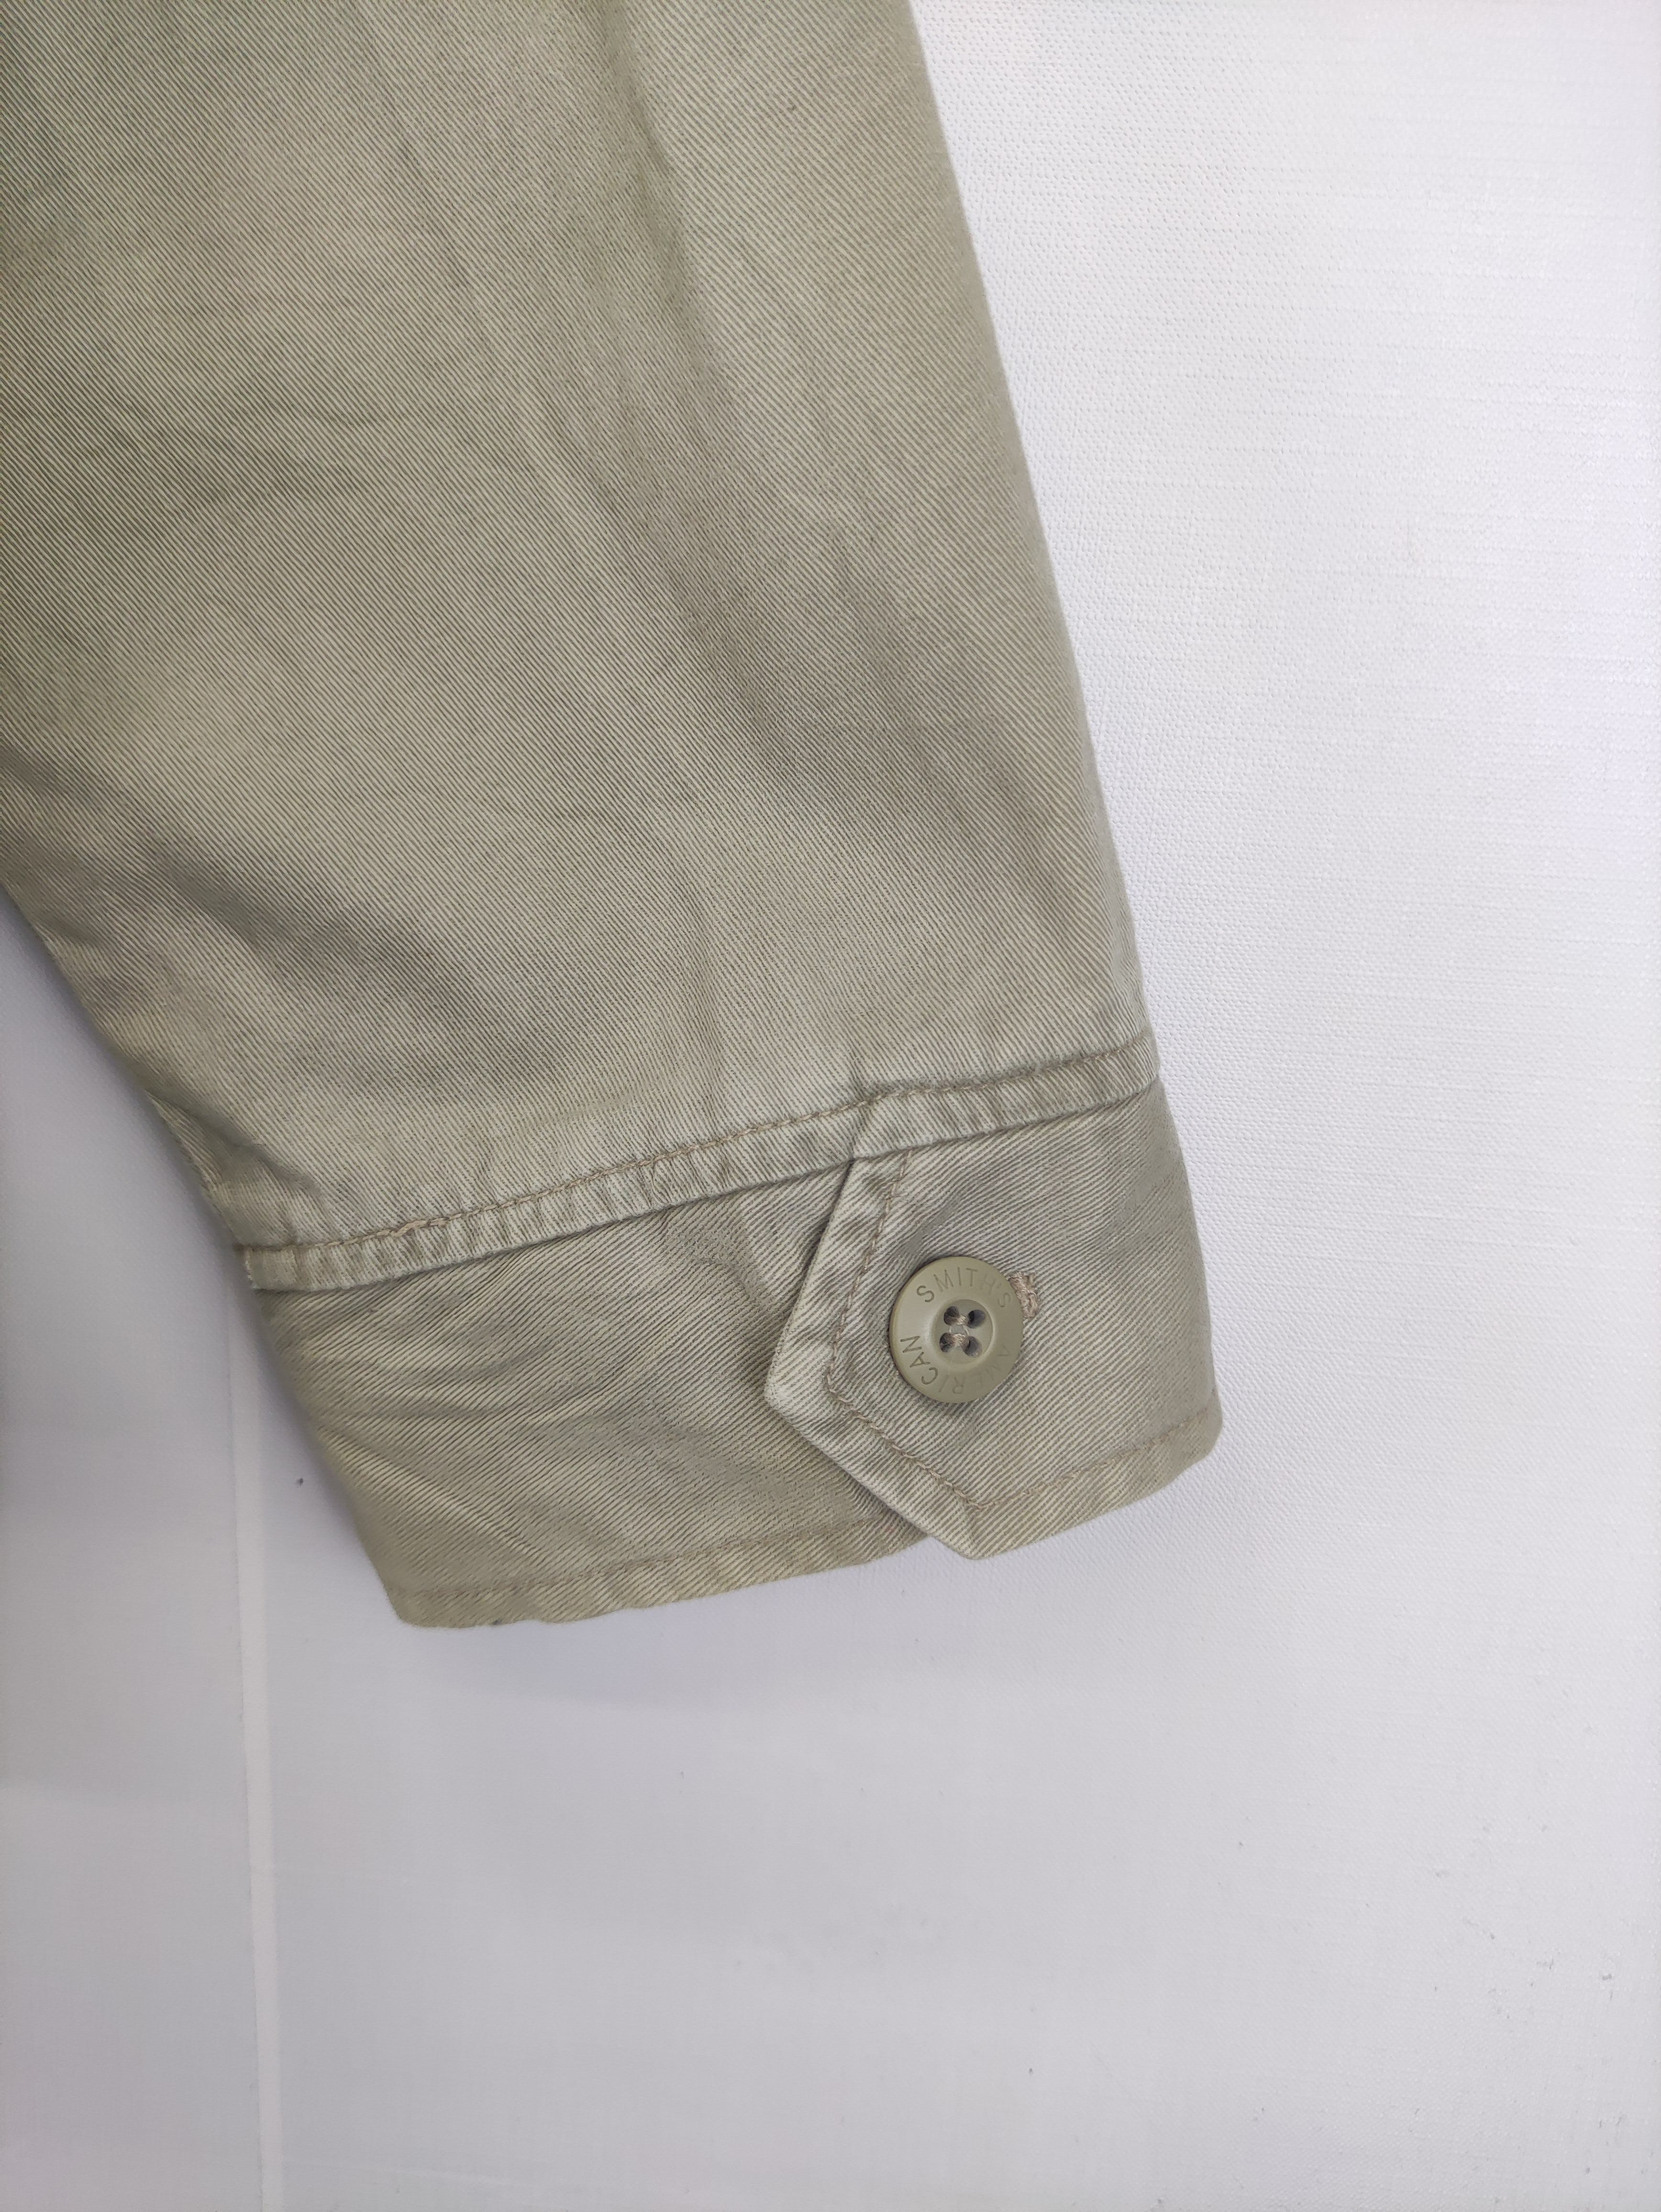 Vintage Smith's Work Wear Jacket Zipper - 8